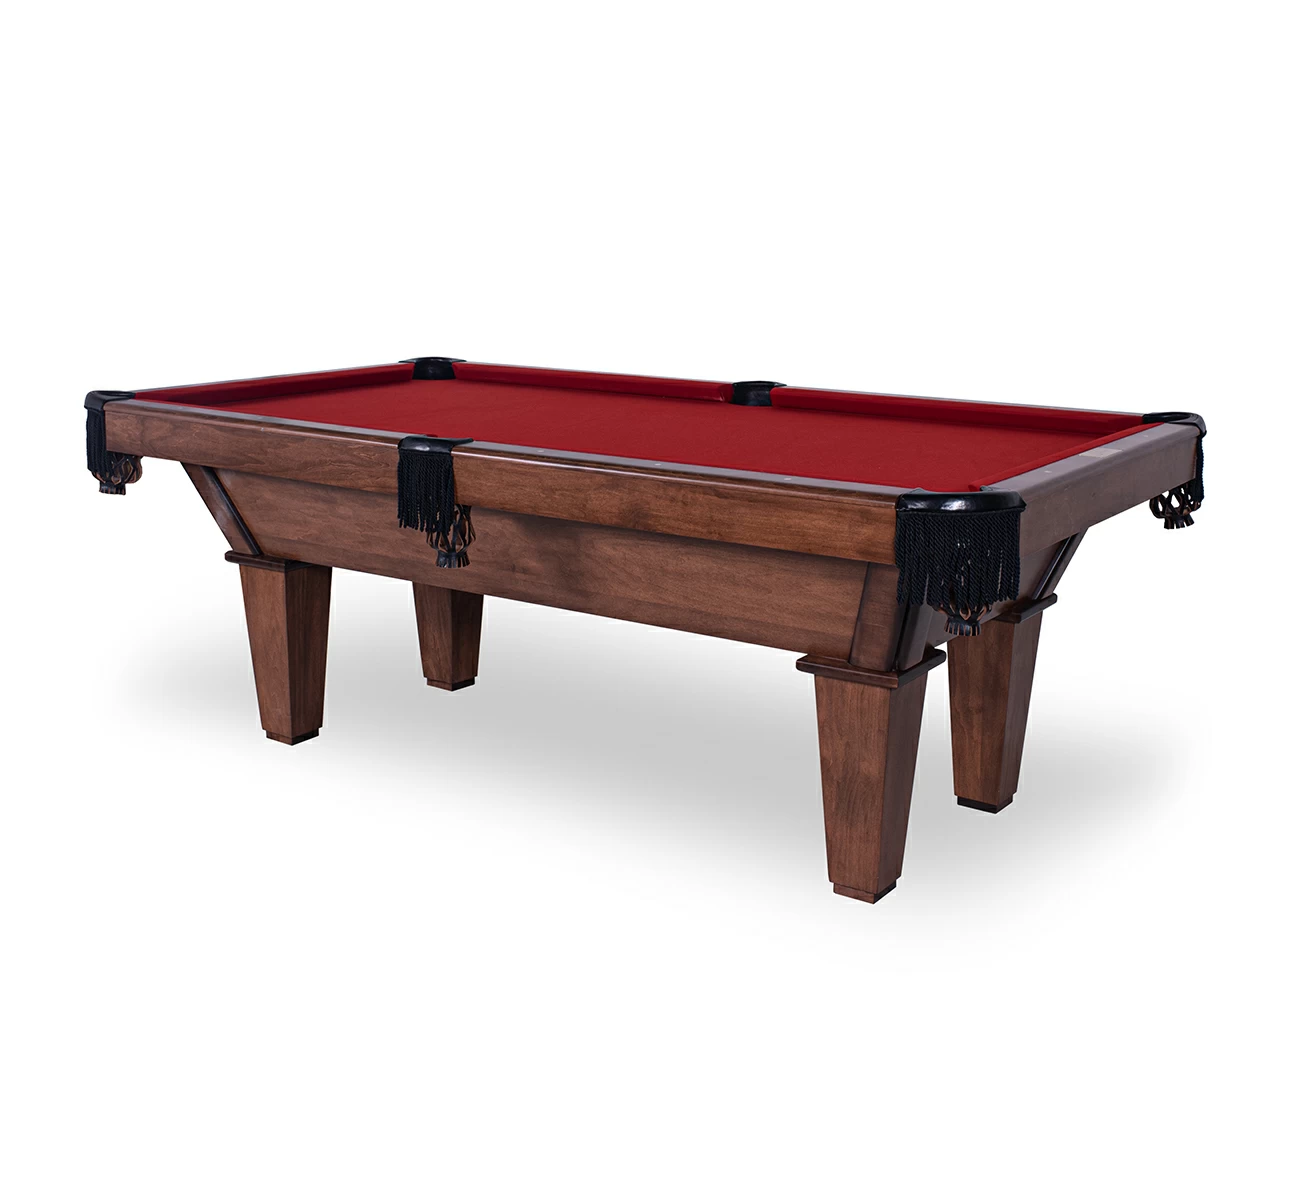 AE Scorpio – Classic Home Billiards Pool Tables & More